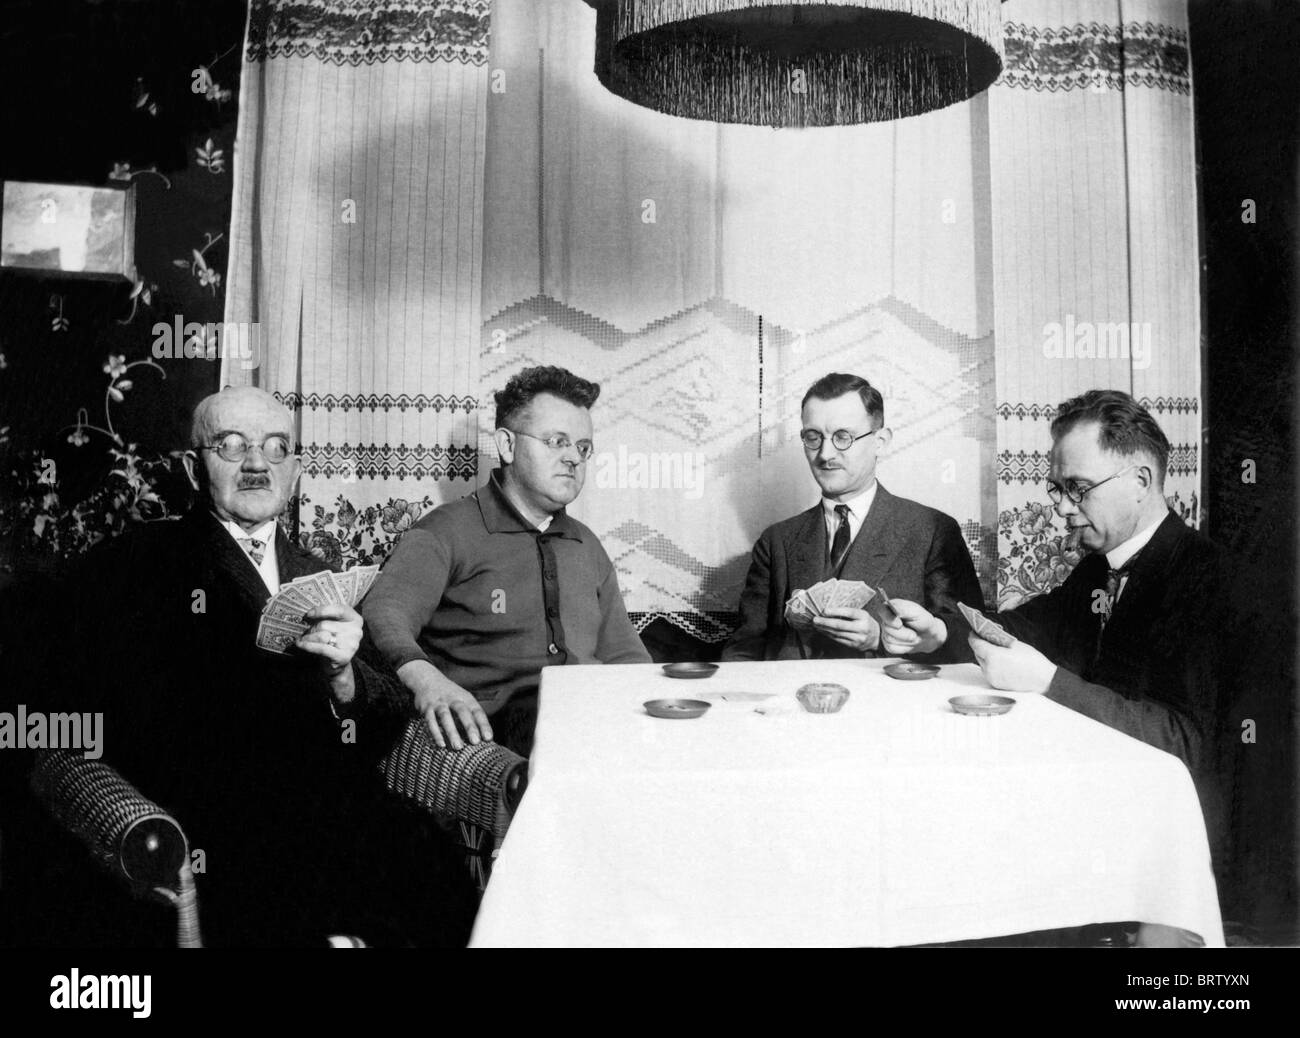 Los hombres jugando a las cartas, imagen histórica, ca. 1930 Foto de stock